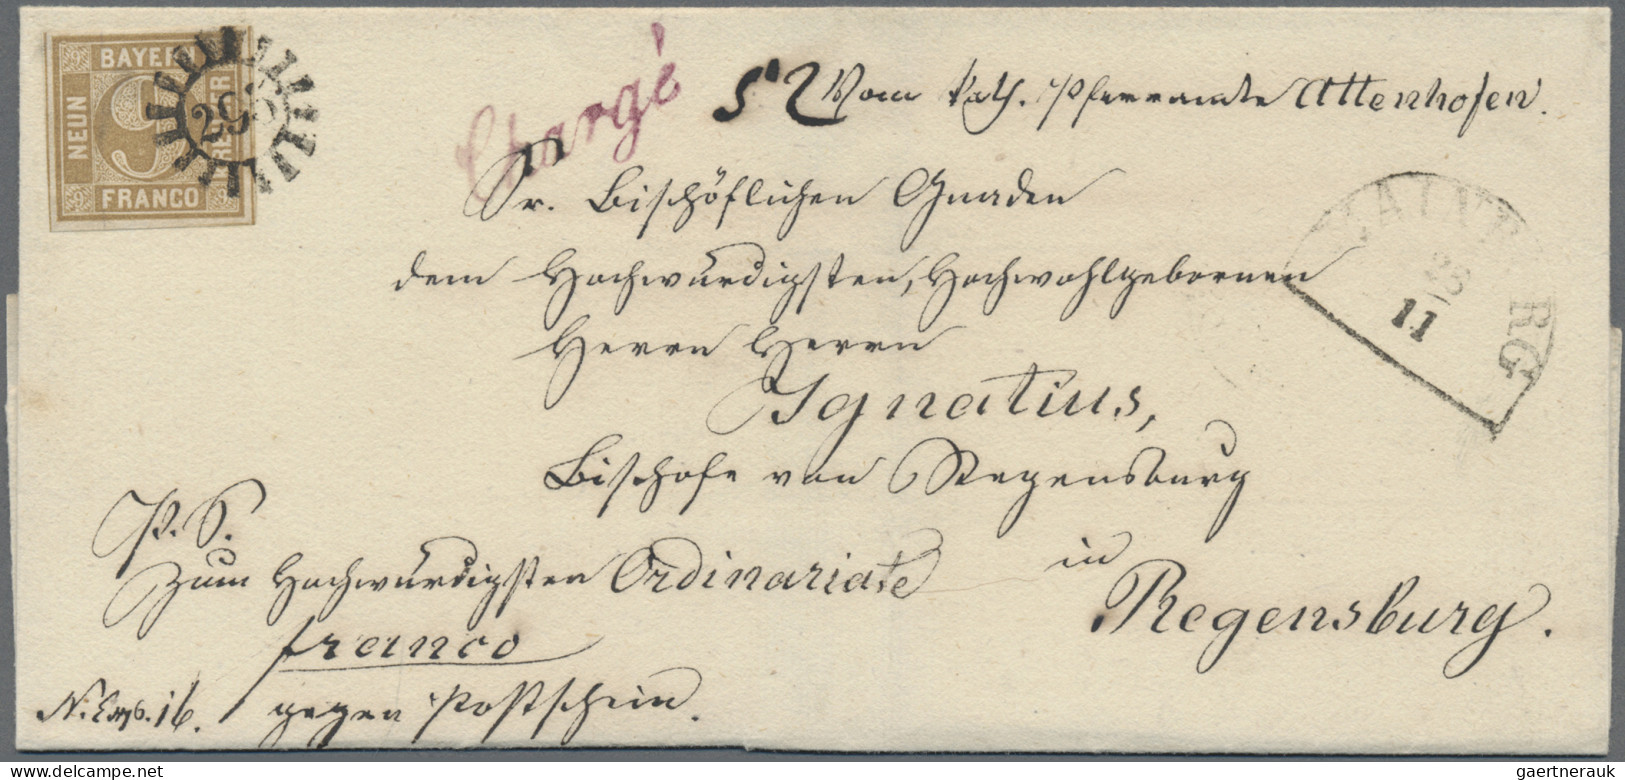 Bayern - Marken Und Briefe: 1862, 9 Kreuzer Ockerbraun, Entwertet Mit Geschlosse - Otros & Sin Clasificación